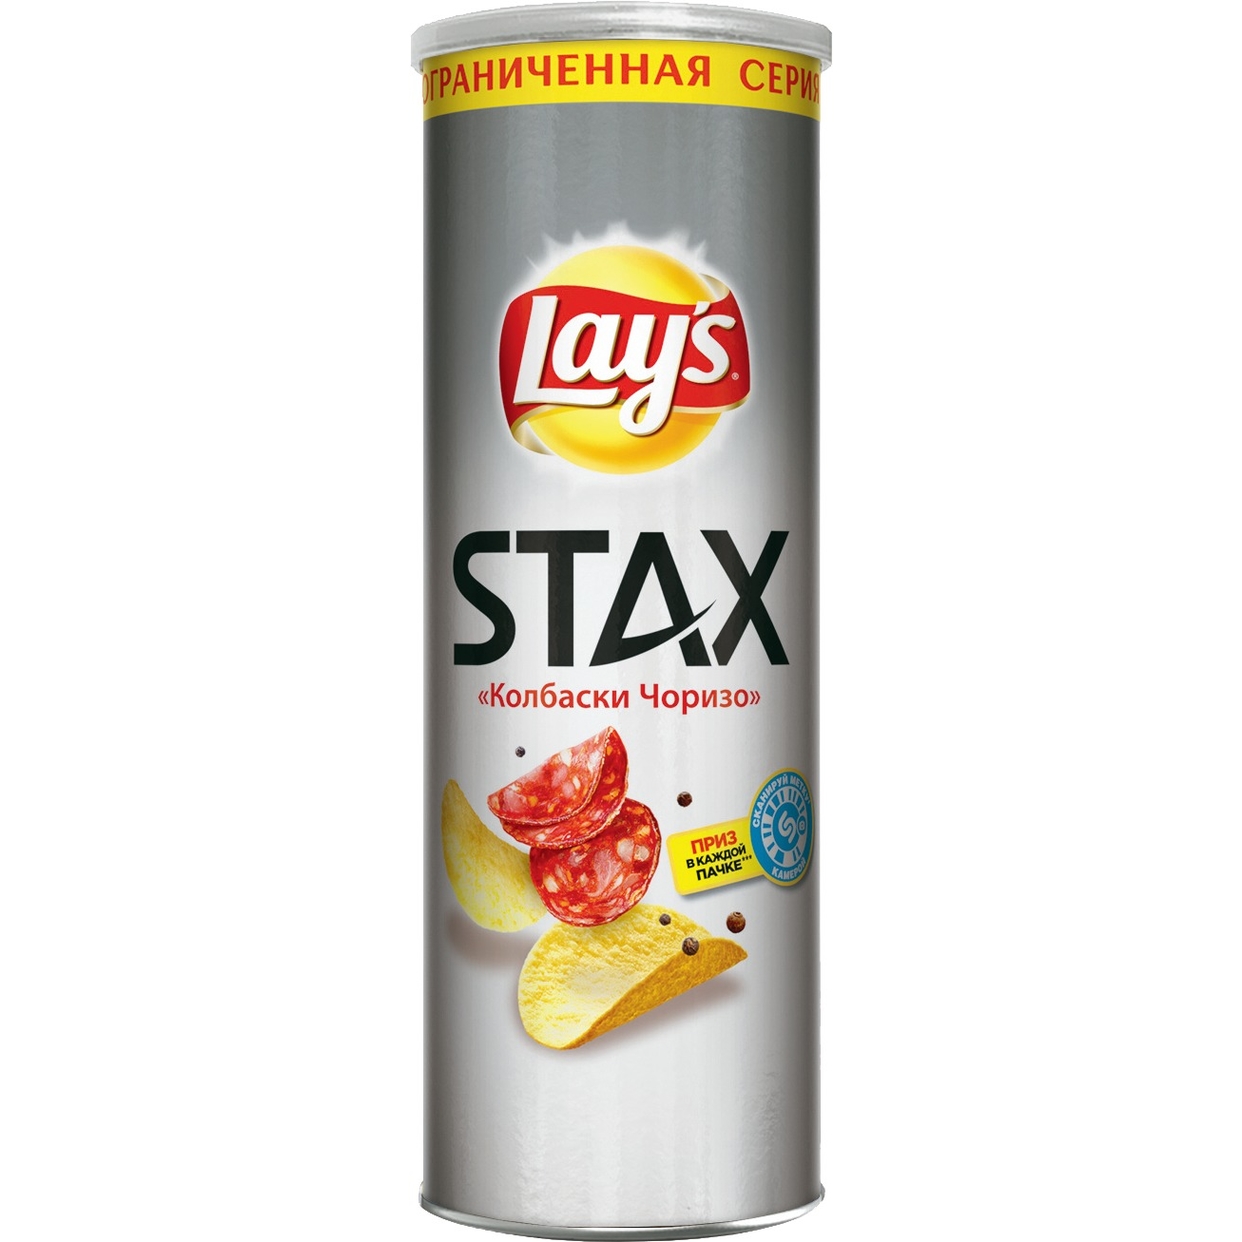 Картофельные чипсы Lay's Stax Со вкусом "Колбаски Чоризо", 165гр по акции в Пятерочке